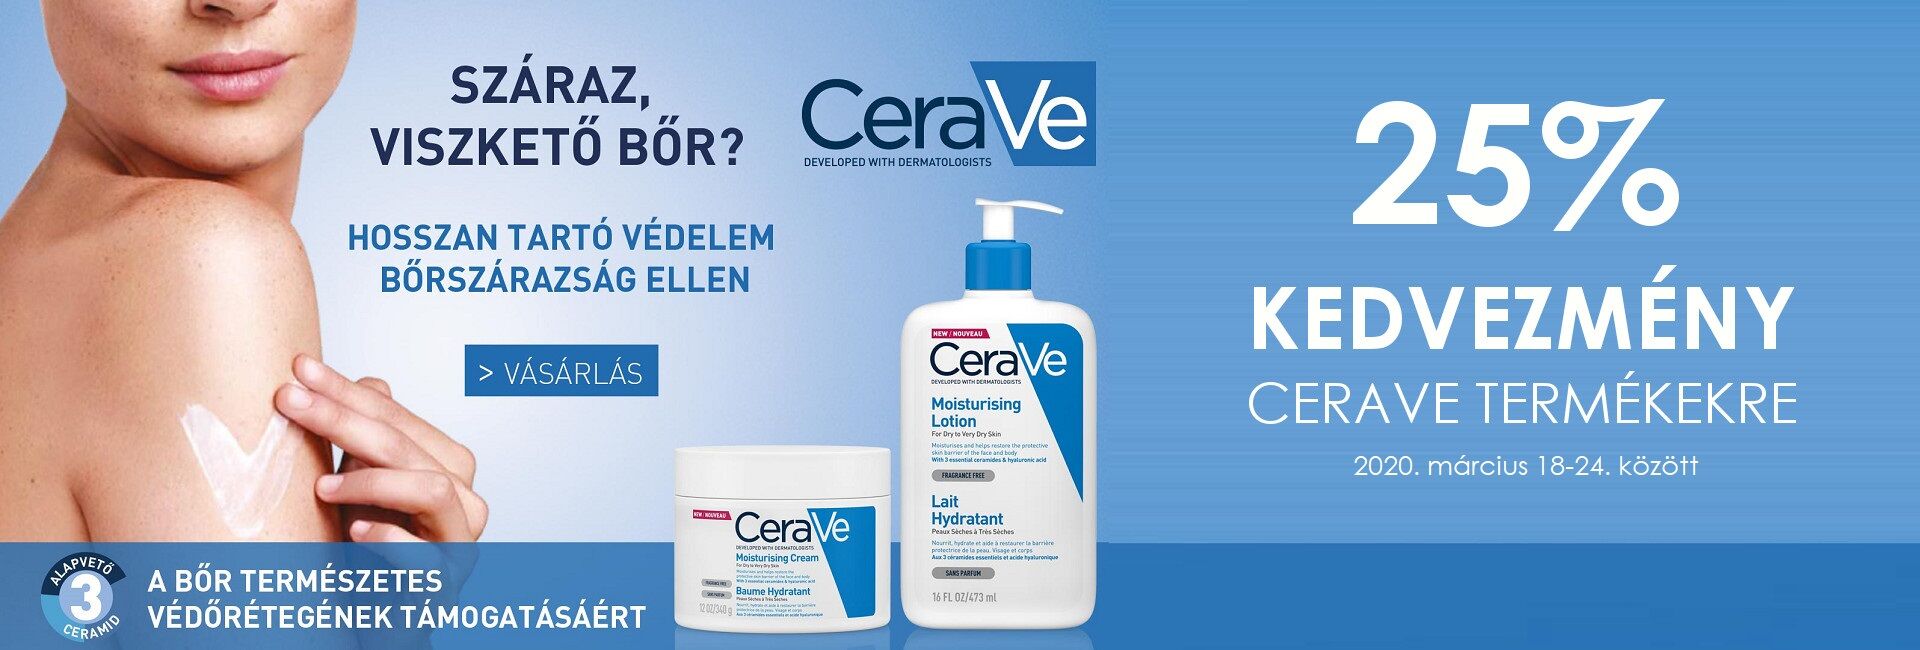 2020. március 18-24. között minden CeraVe terméket 25% kedvezménnyel kínálunk! 